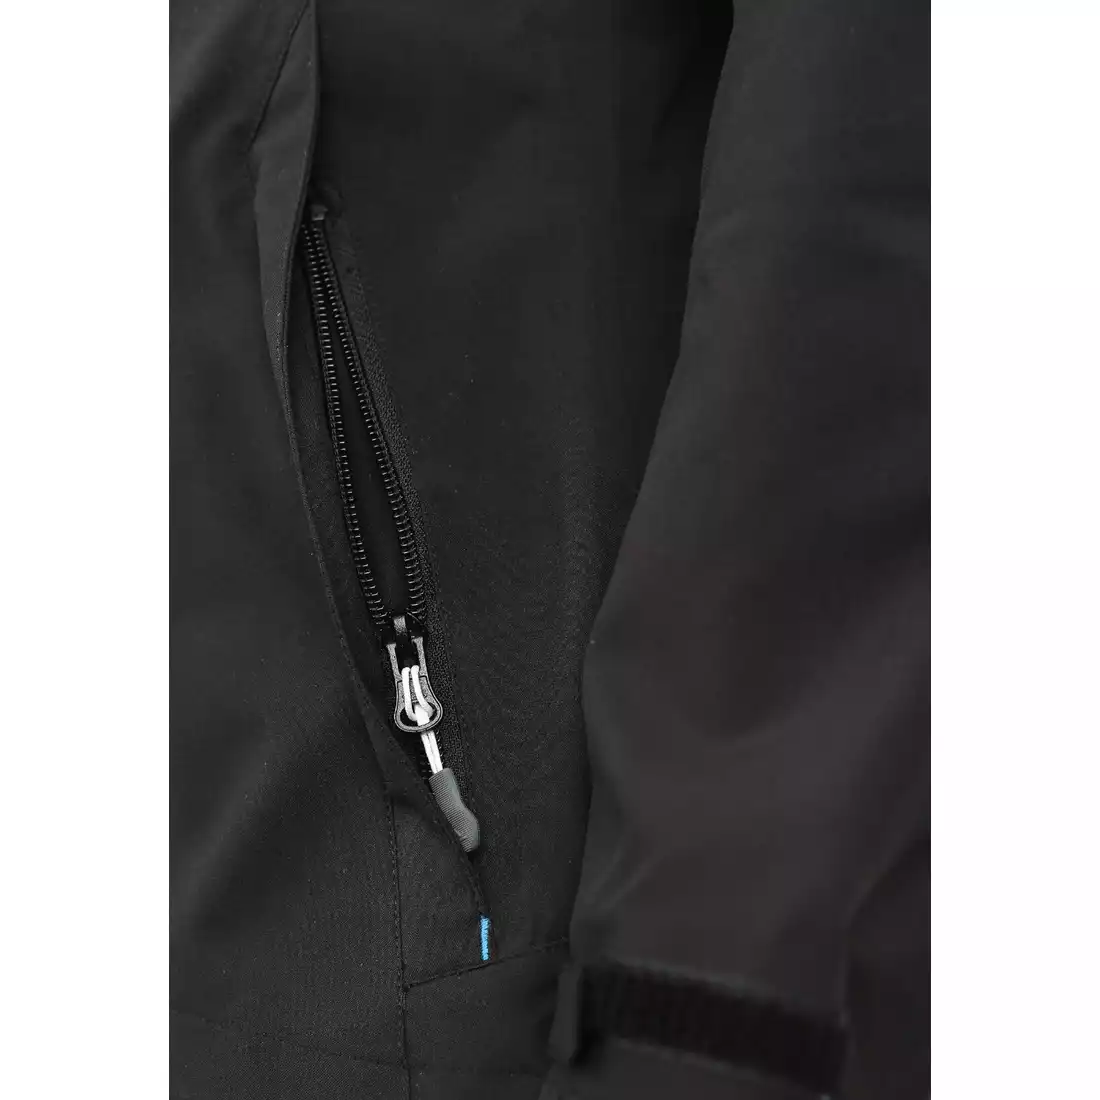 DARE2B damska kurtka przeciwdeszczowa PAVILLION DWW102-800, kolor: czarny